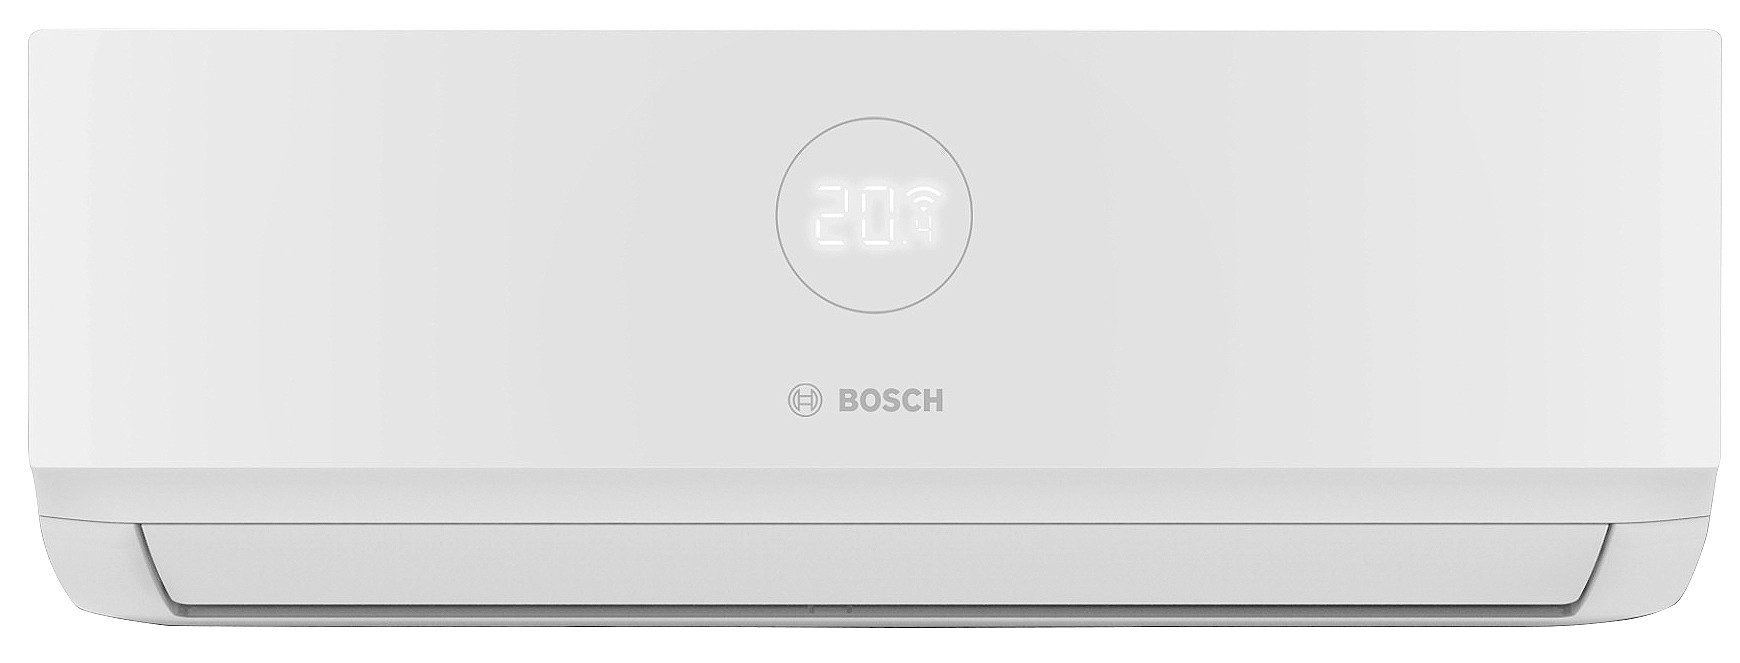 Внутренний блок мультисплит-системы Bosch CL3000iU W 53 E, 5,3 кВт в интернет-магазине, главное фото